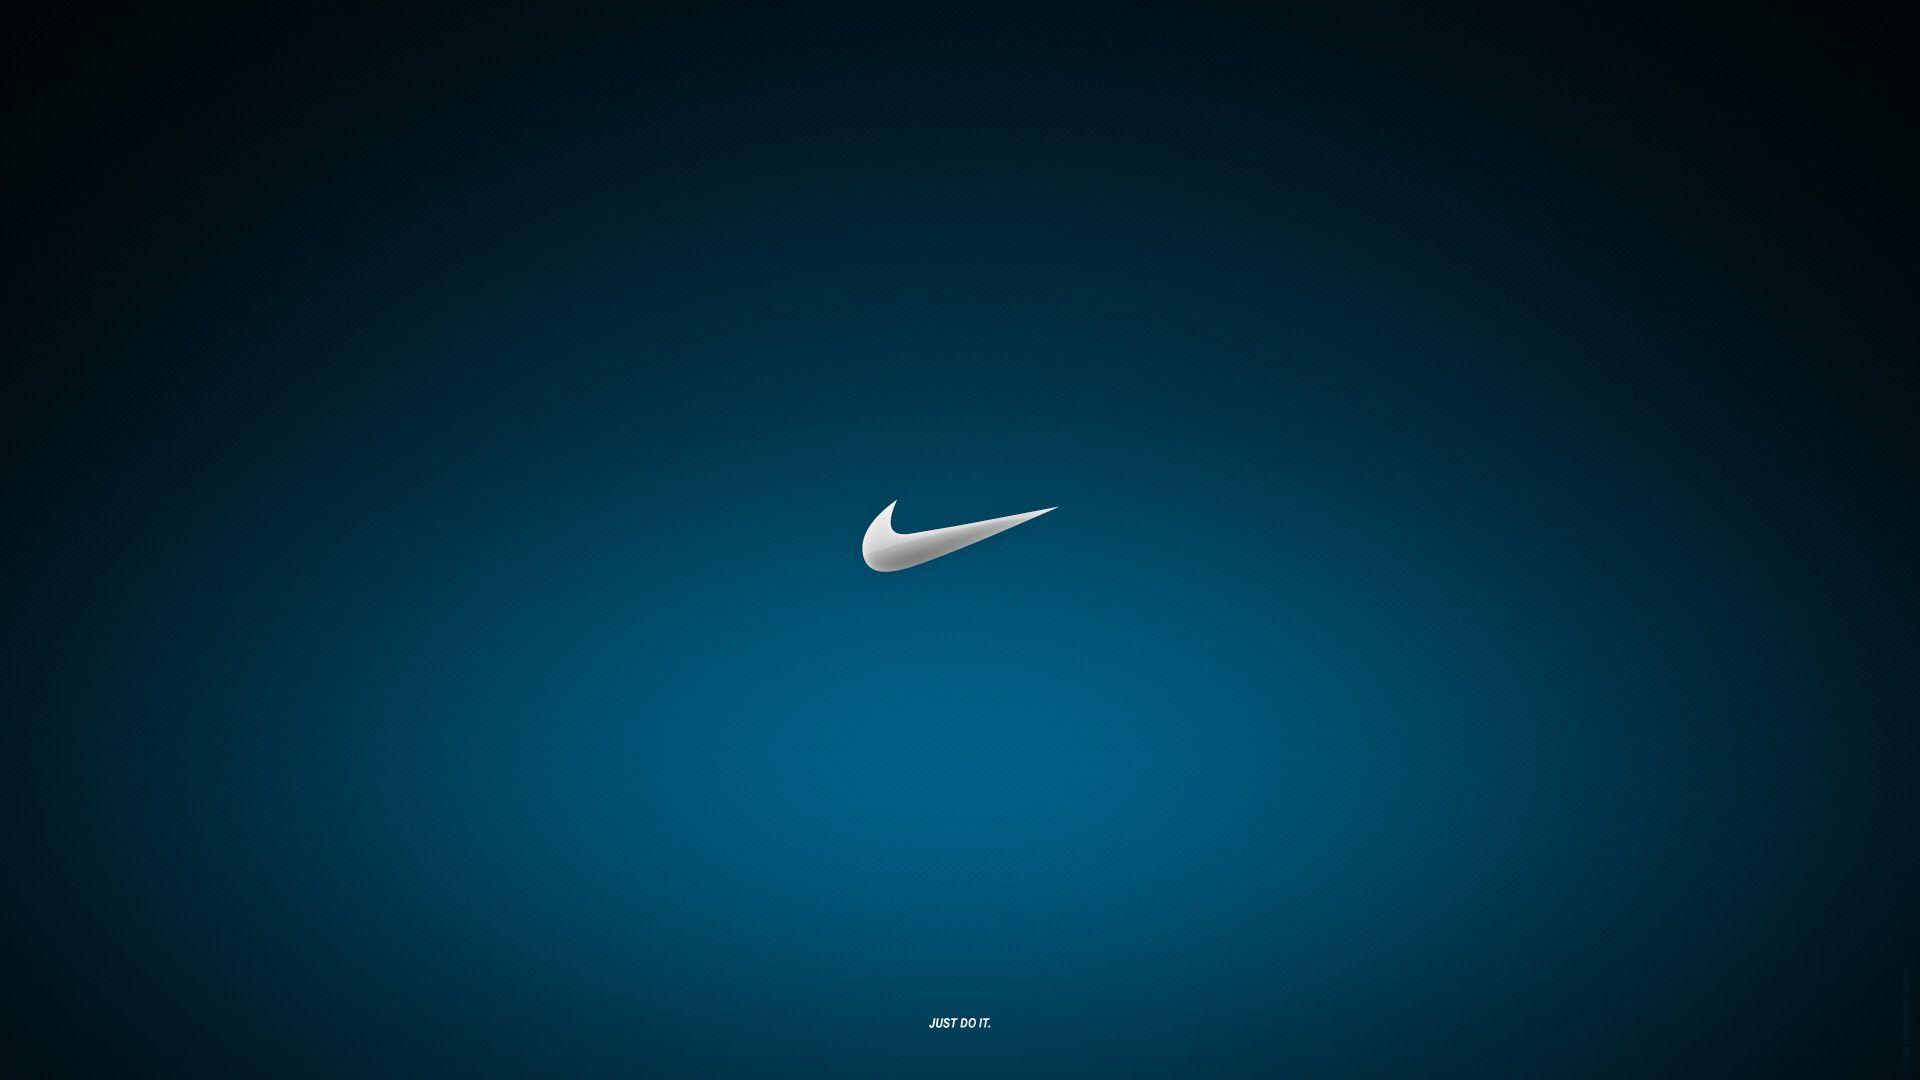 Nike Wallpaper For Laptop